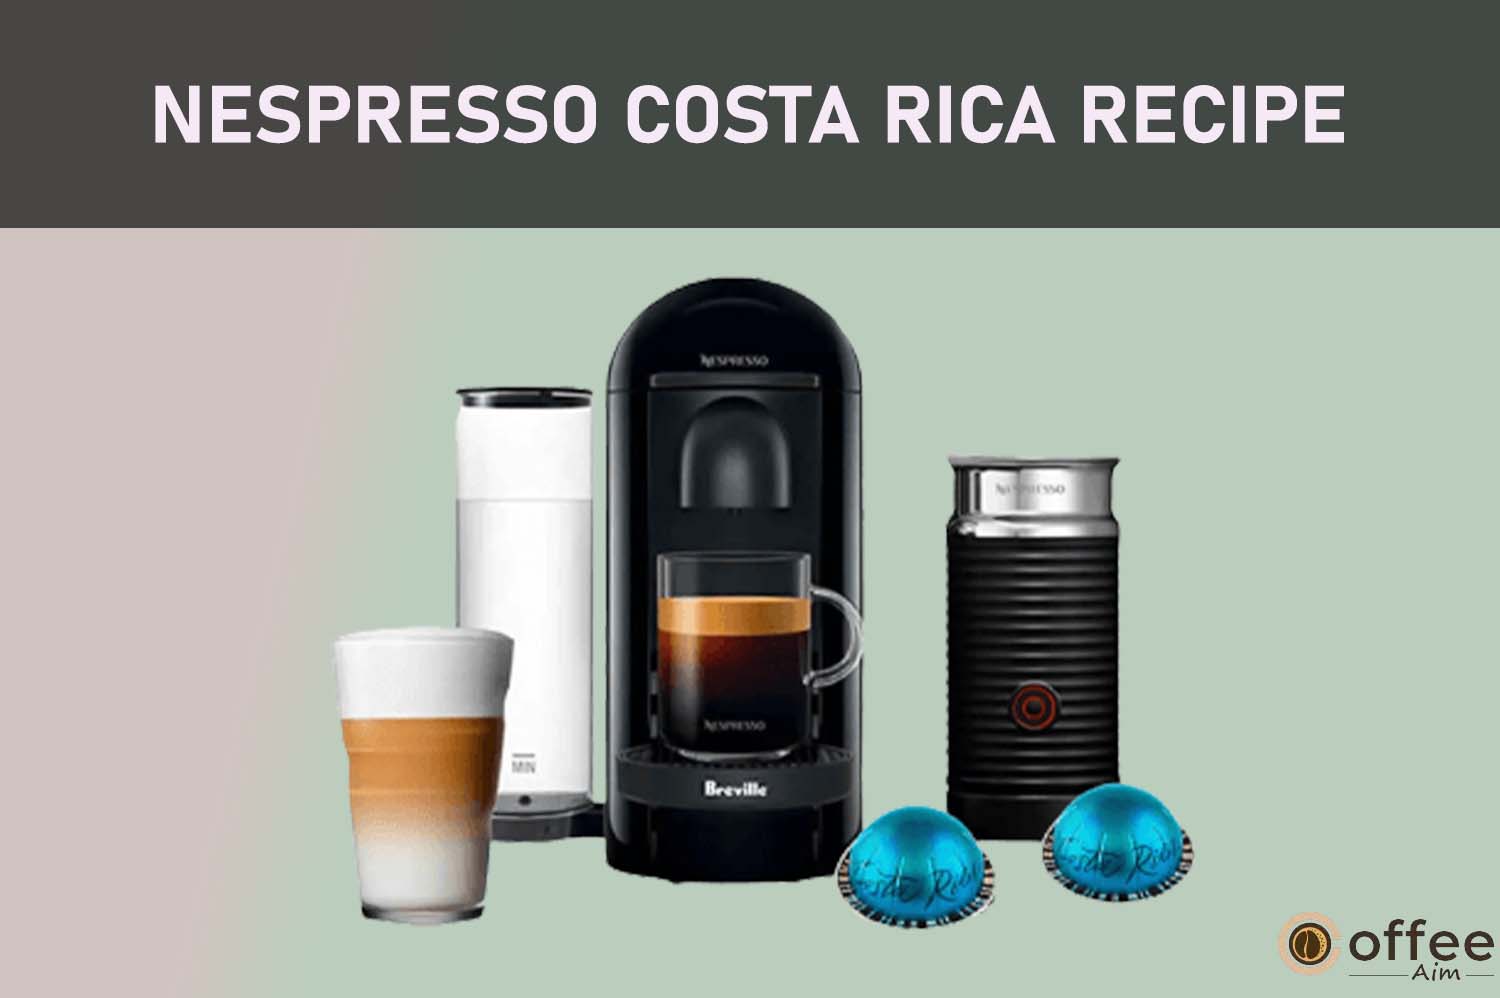 Feature image for the artcile "Nespresso Costa Rica Recipe"